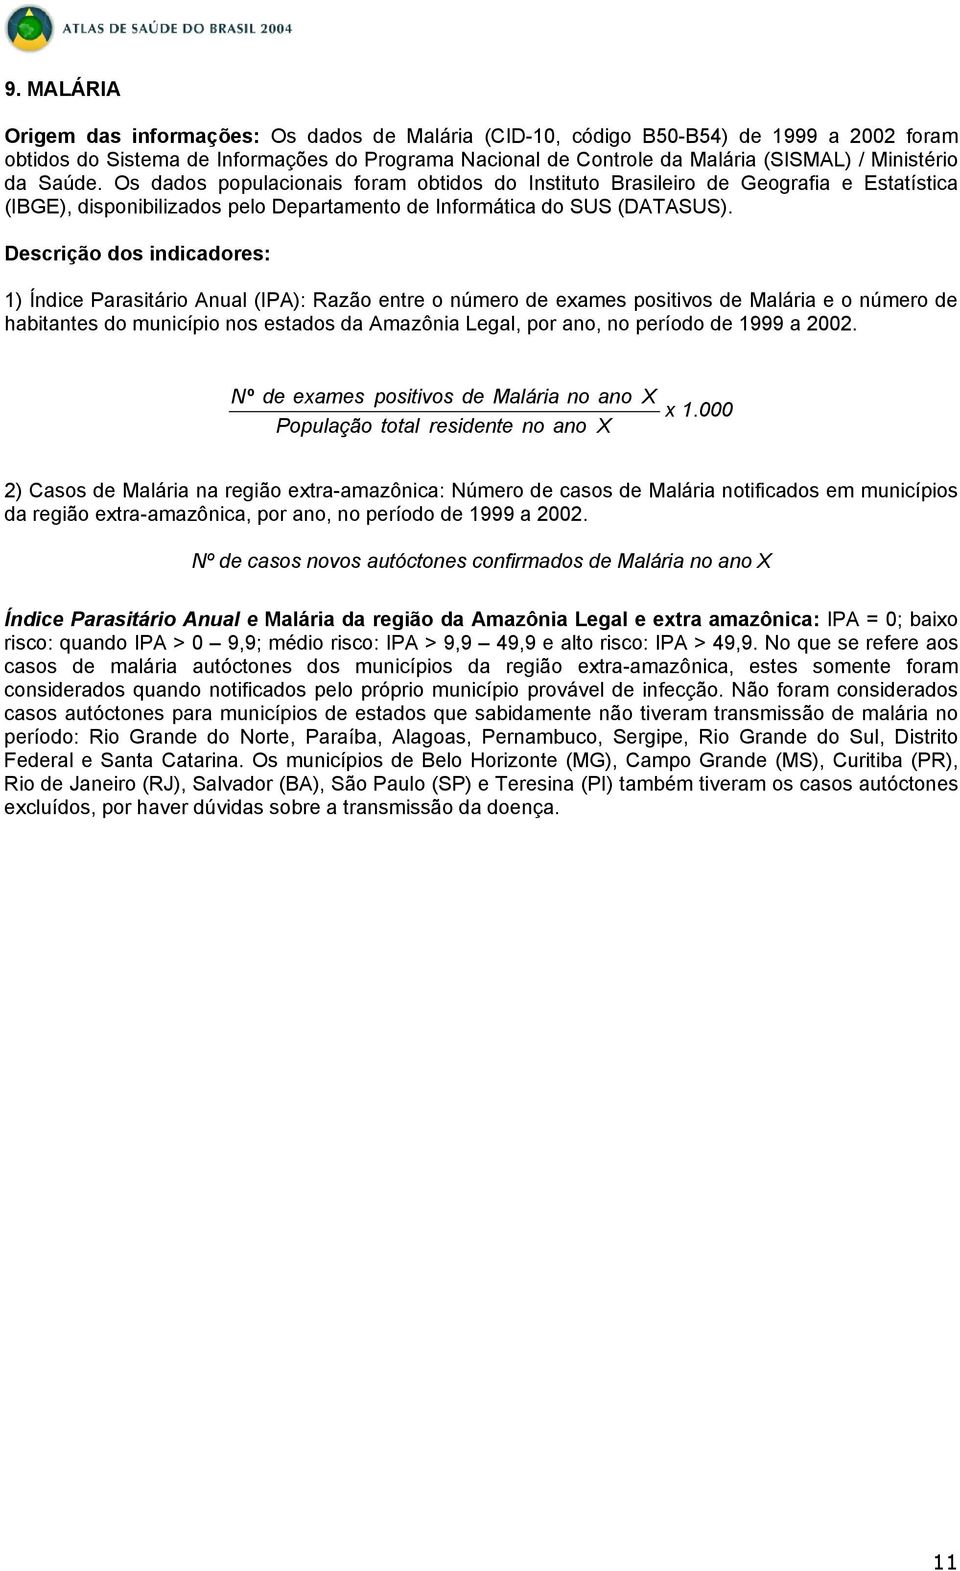 1) Índice Parasitário Anual (IPA): Razão entre o número de exames positivos de Malária e o número de habitantes do município nos estados da Amazônia Legal, por ano, no período de 1999 a 2002.